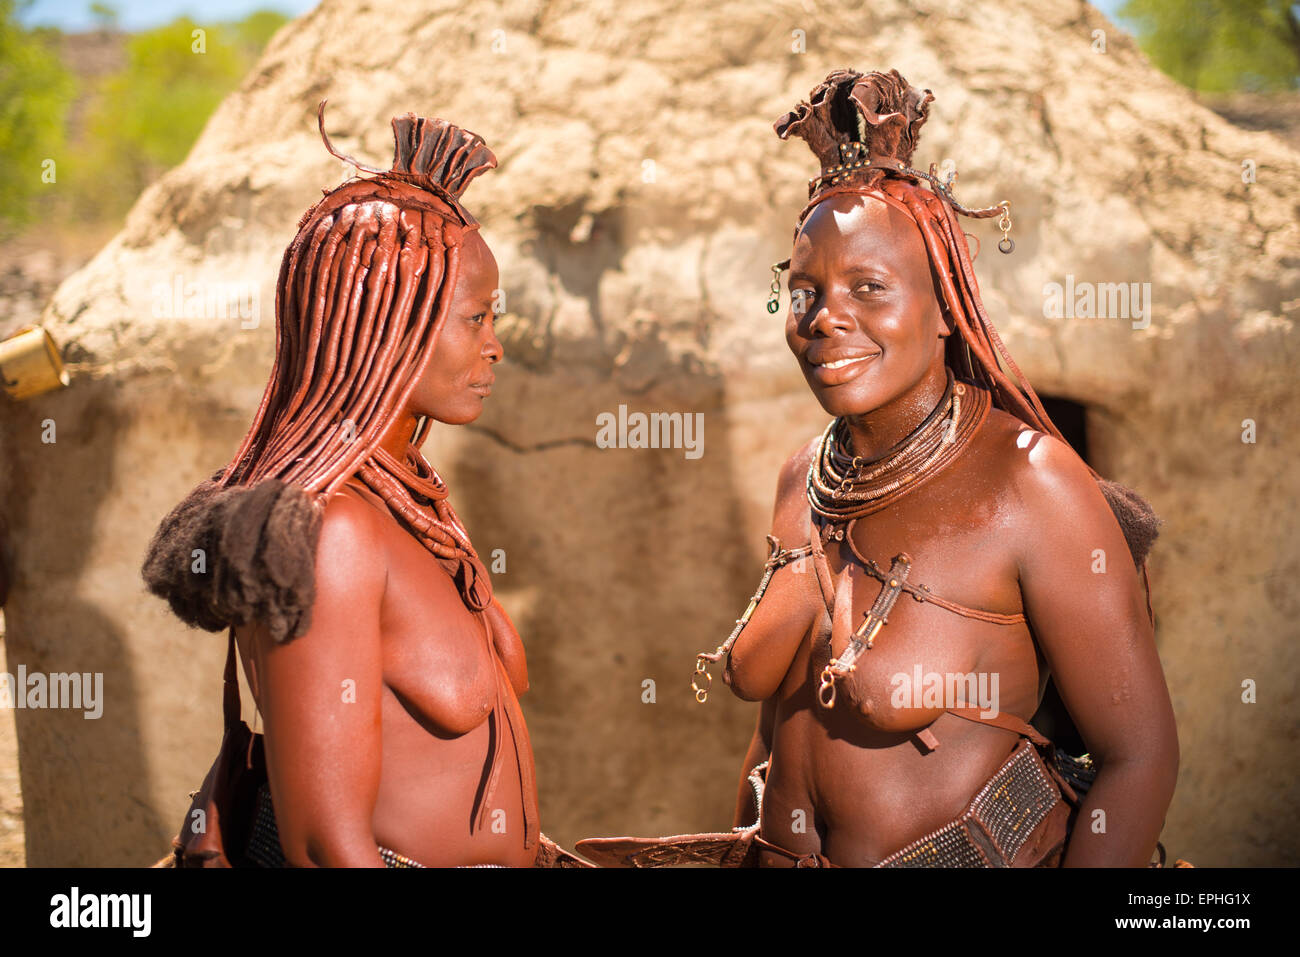 L'Afrique, la Namibie. Village de la tribu Himba. Deux femmes autochtones posant. Banque D'Images